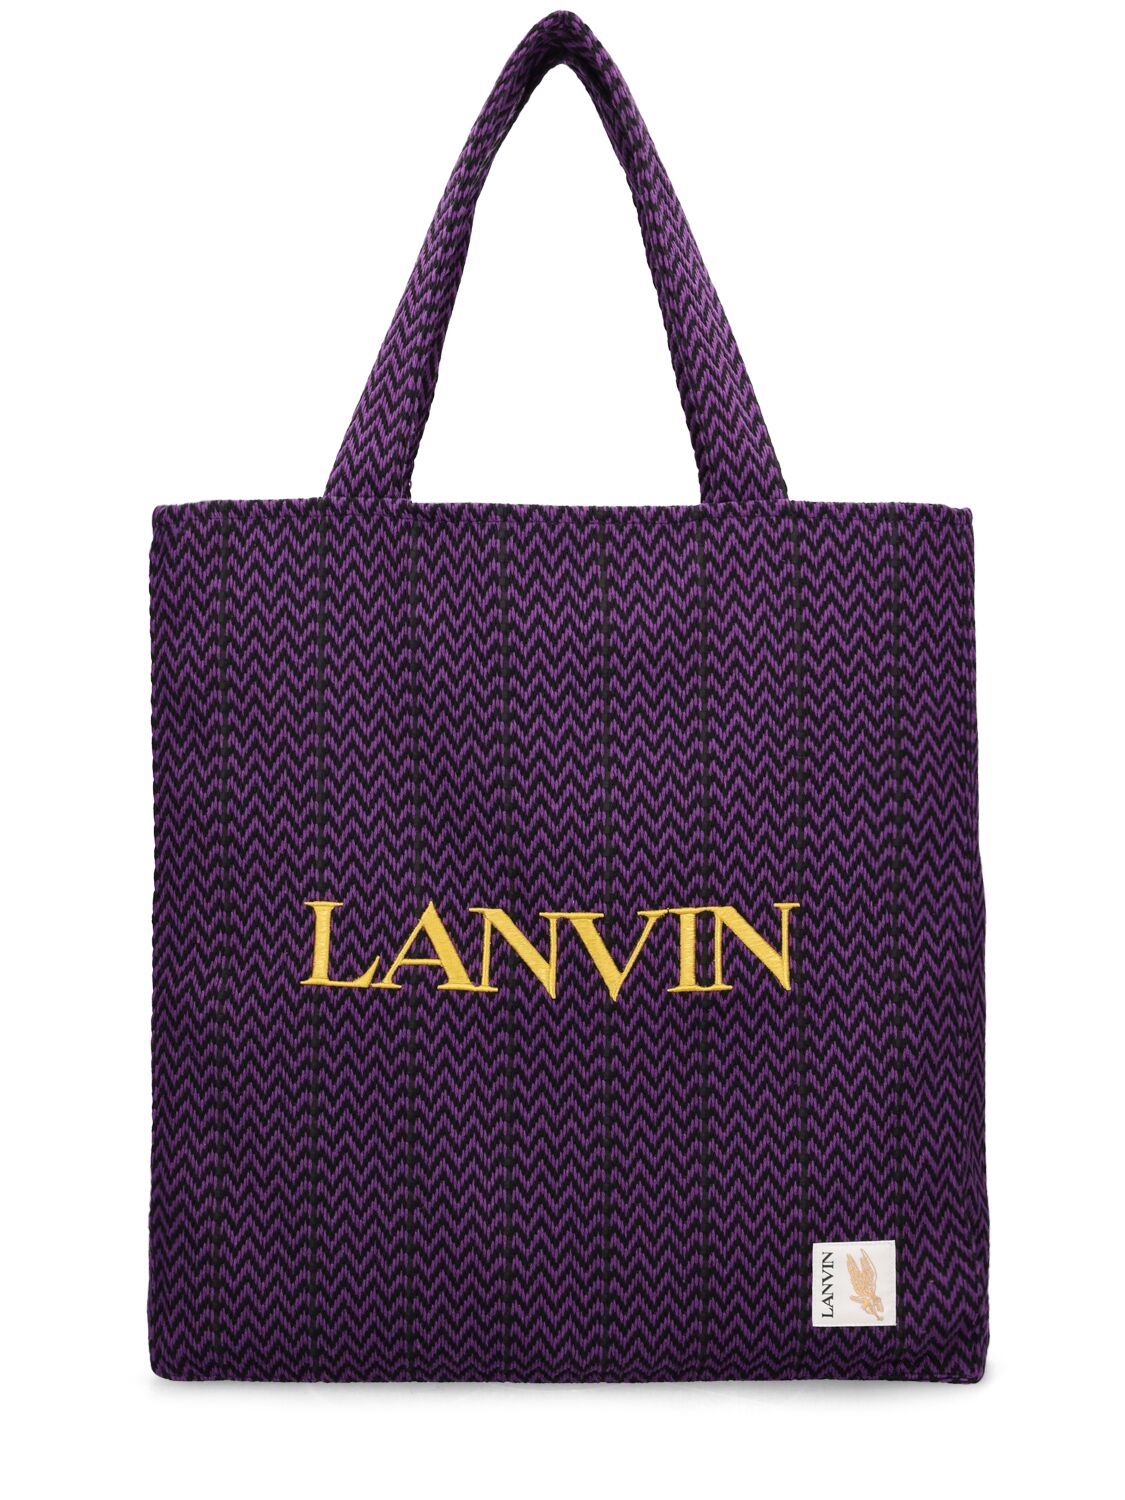 Lanvin Tote Bag In Purple